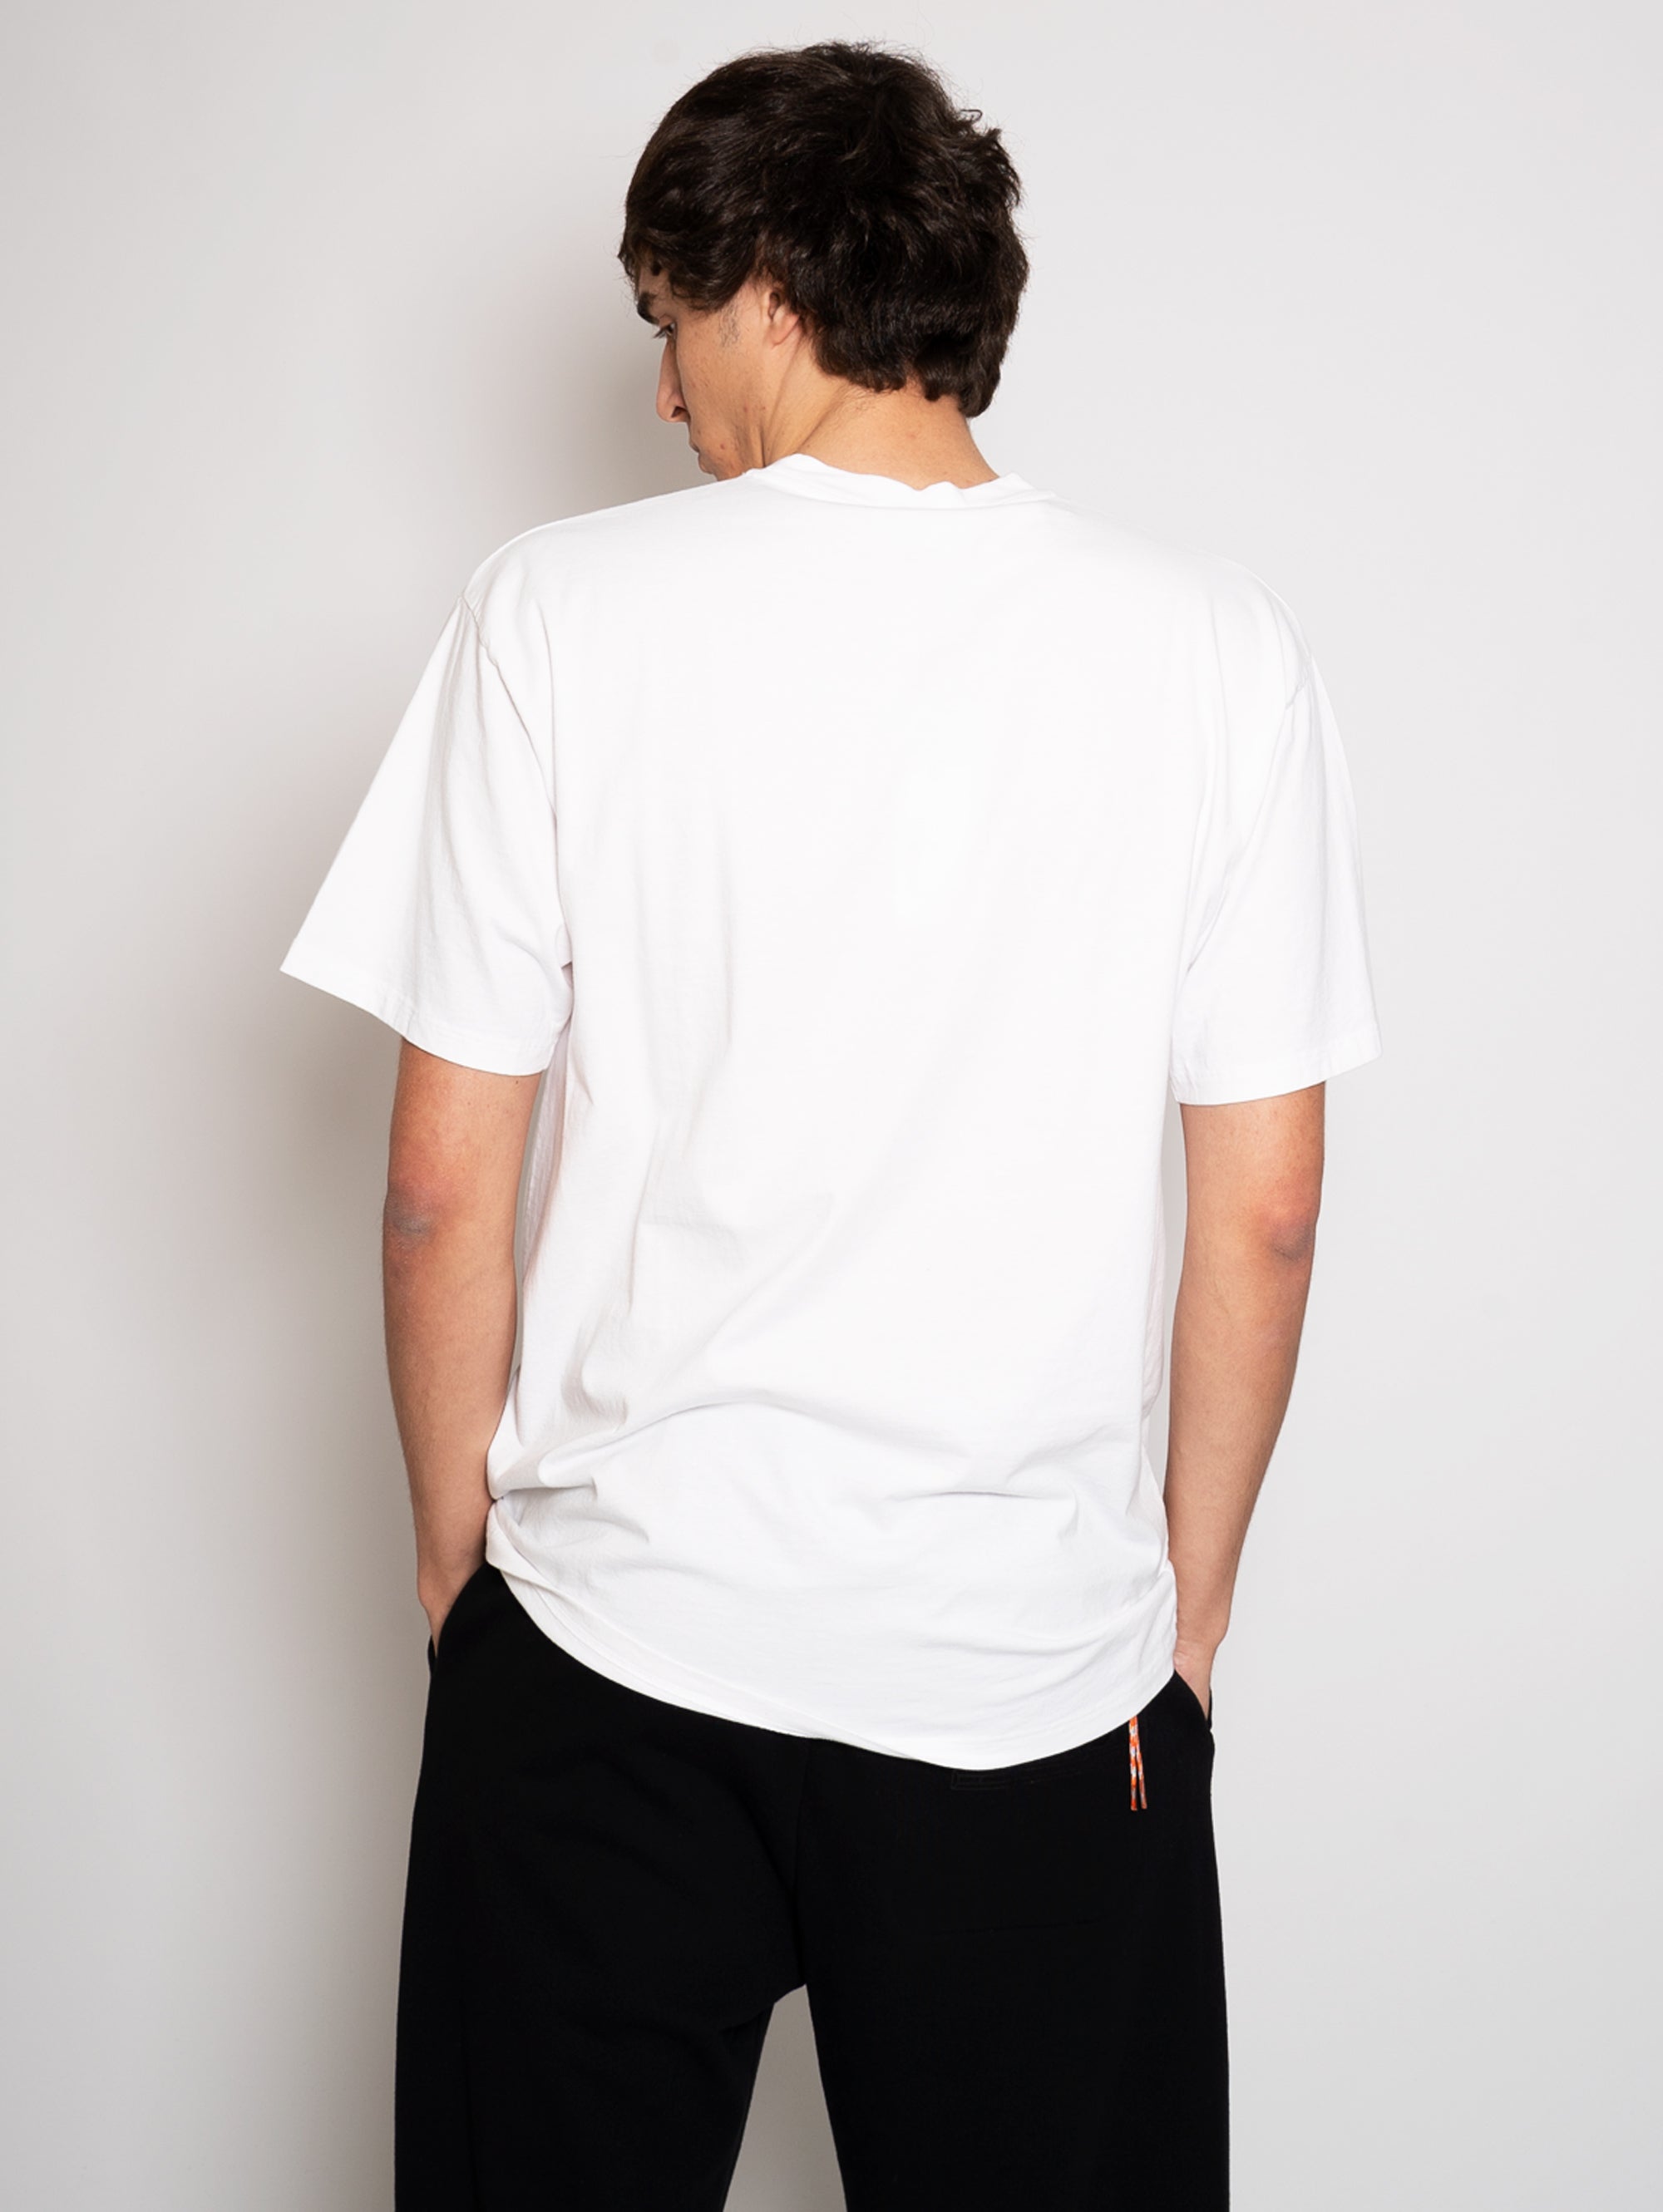 Wendbares T-Shirt mit weißem Aufdruck